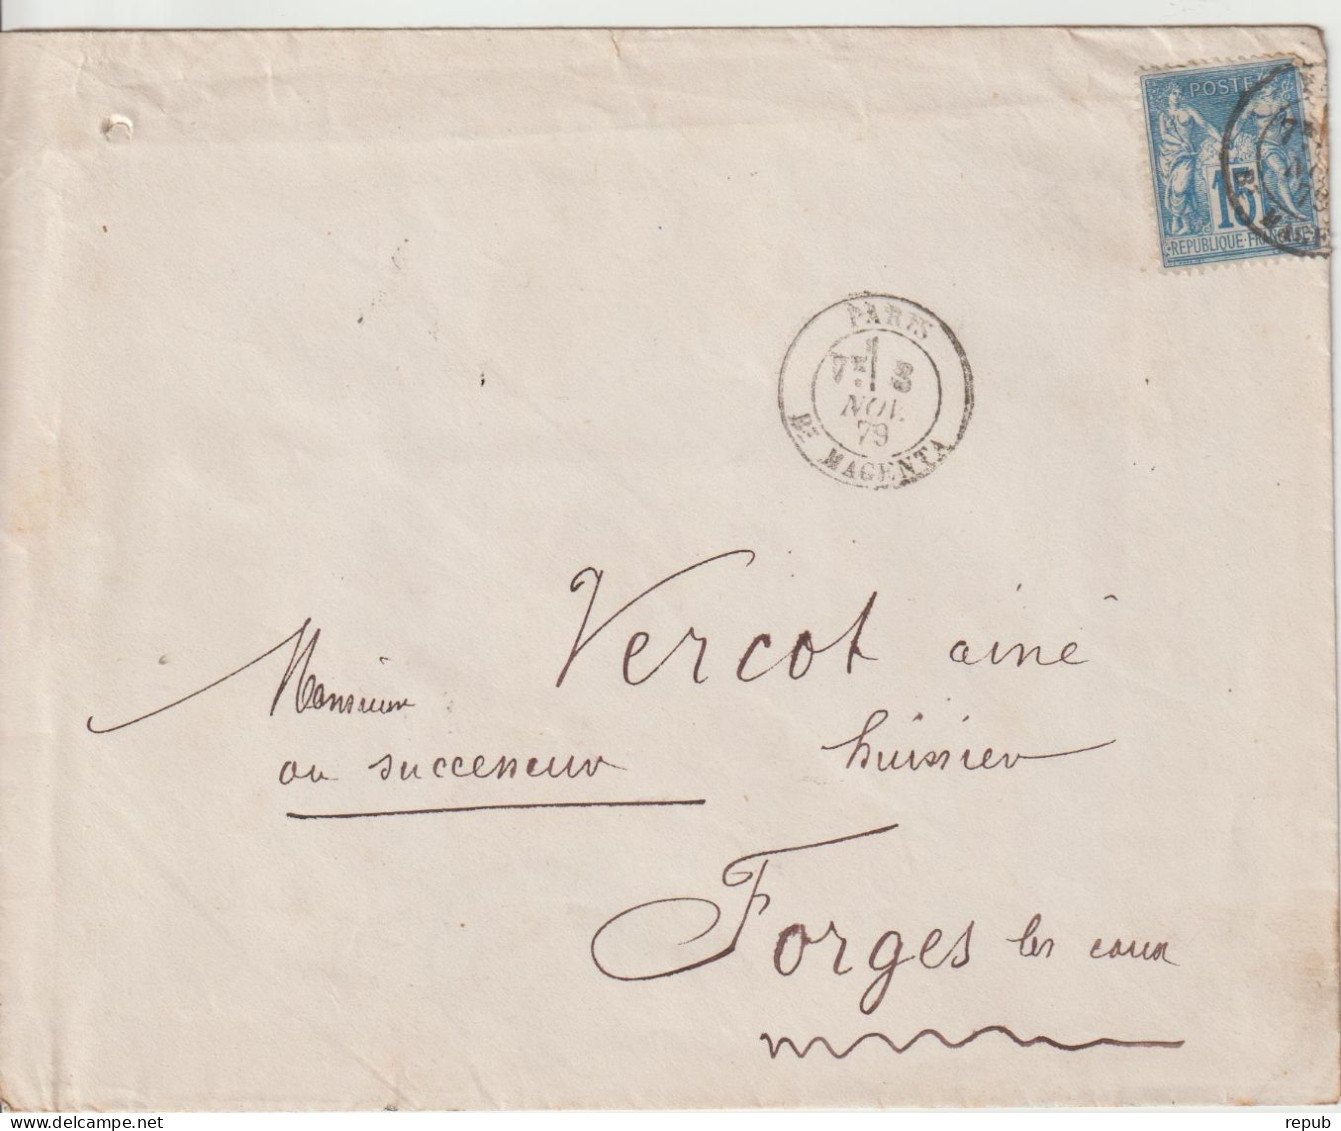 France Lettre 1879 De Paris Bd Magenta Pour Forges (76) - 1877-1920: Semi-moderne Periode